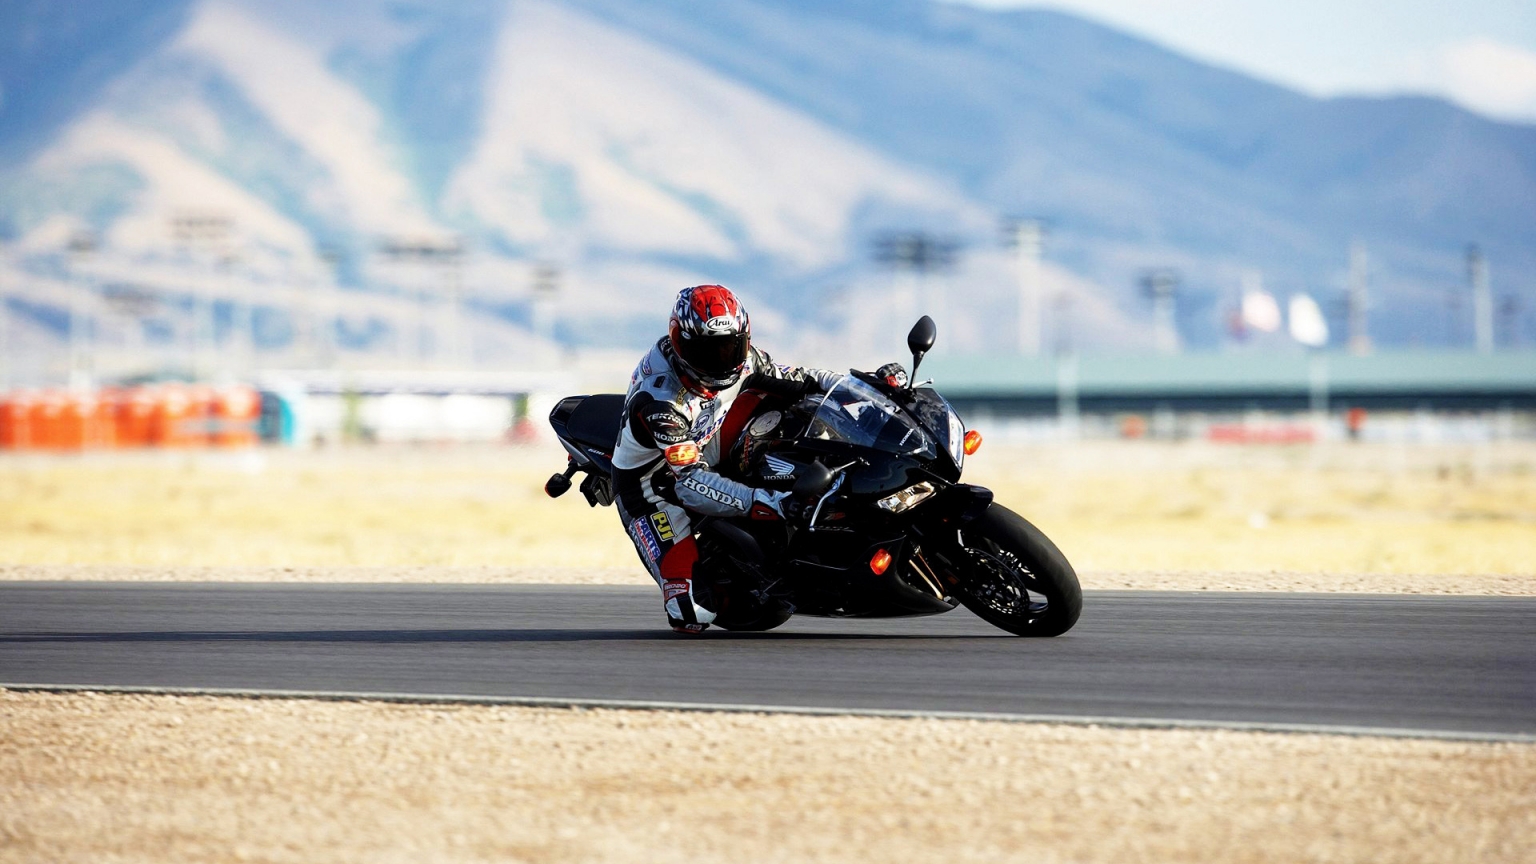 Moto Race for 1536 x 864 HDTV resolution